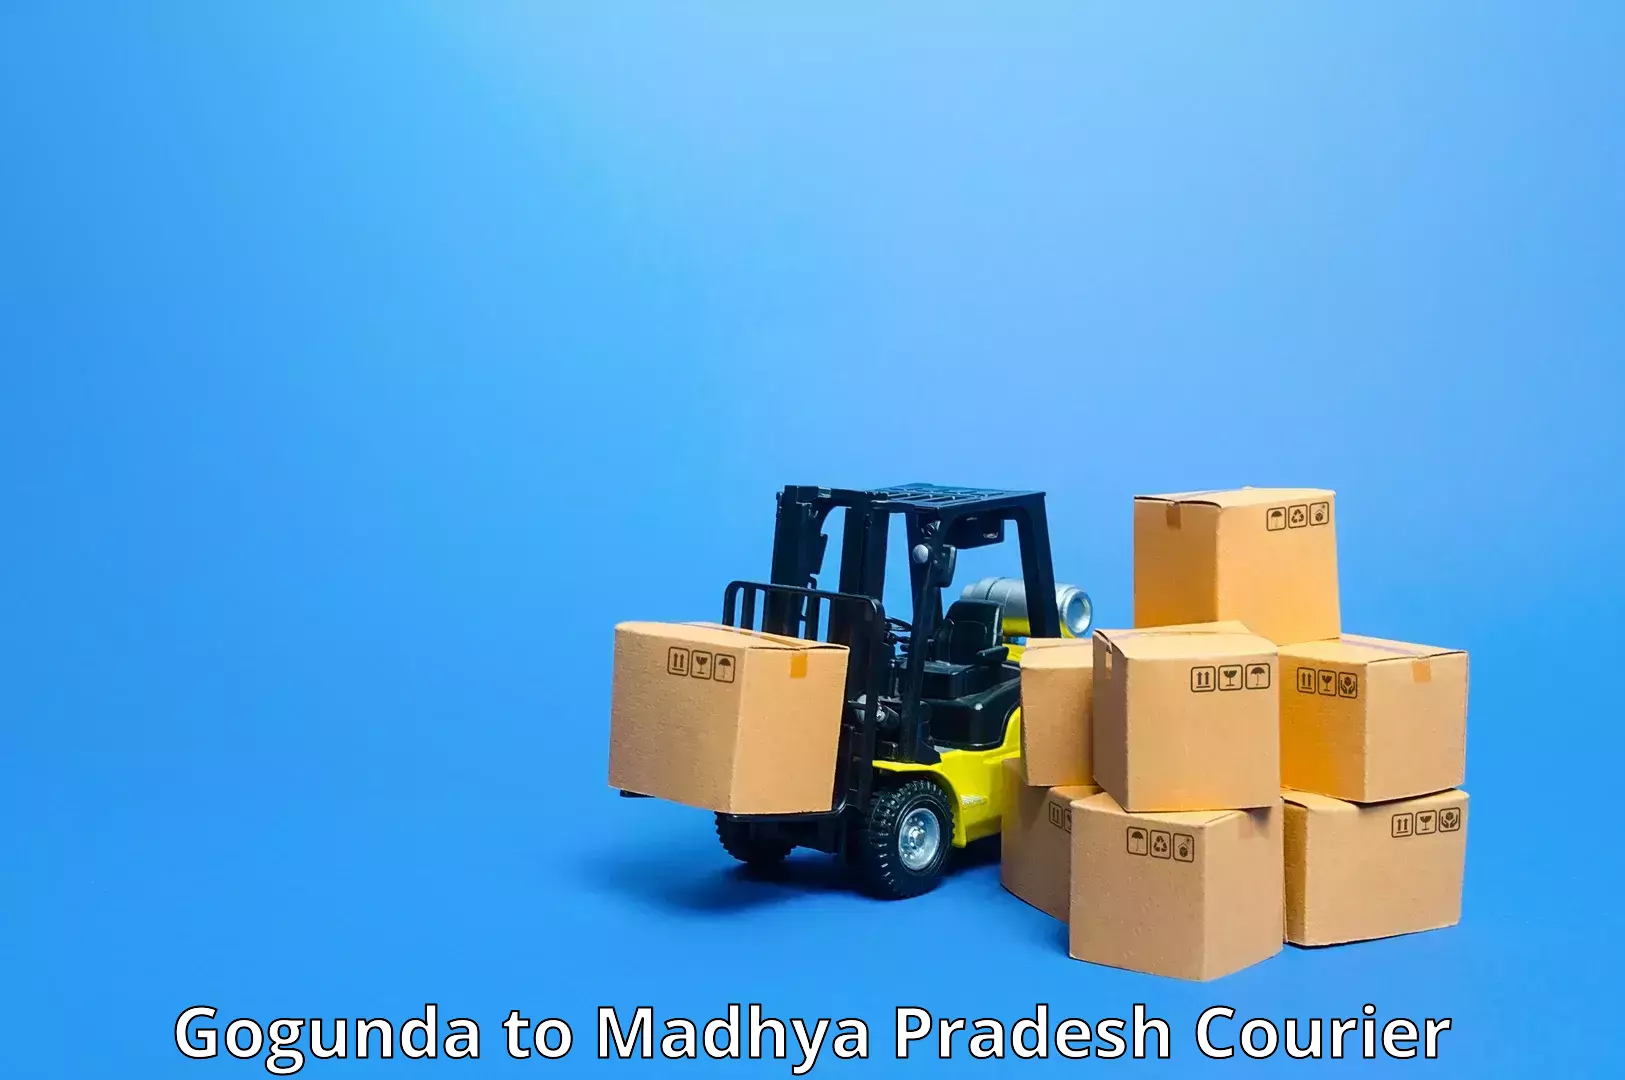 Reliable courier service Gogunda to Umaria